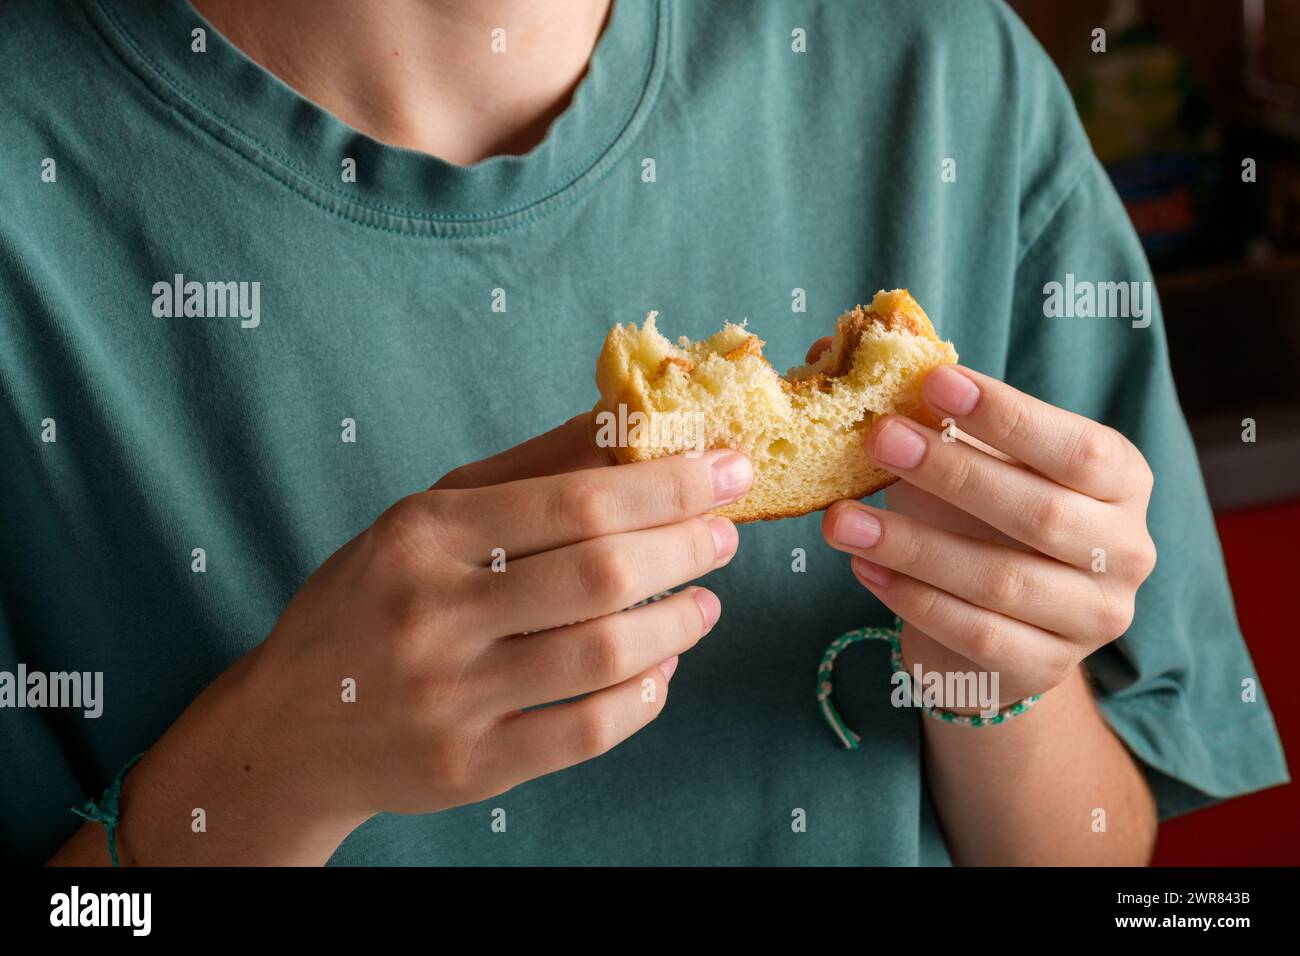 Mains féminines tenant un sandwich au beurre d'arachide mordu avec du miel de pain de blé, prendre un petit déjeuner. Femme sans visage en t-shirt de couleur vert pétrole avec Banque D'Images